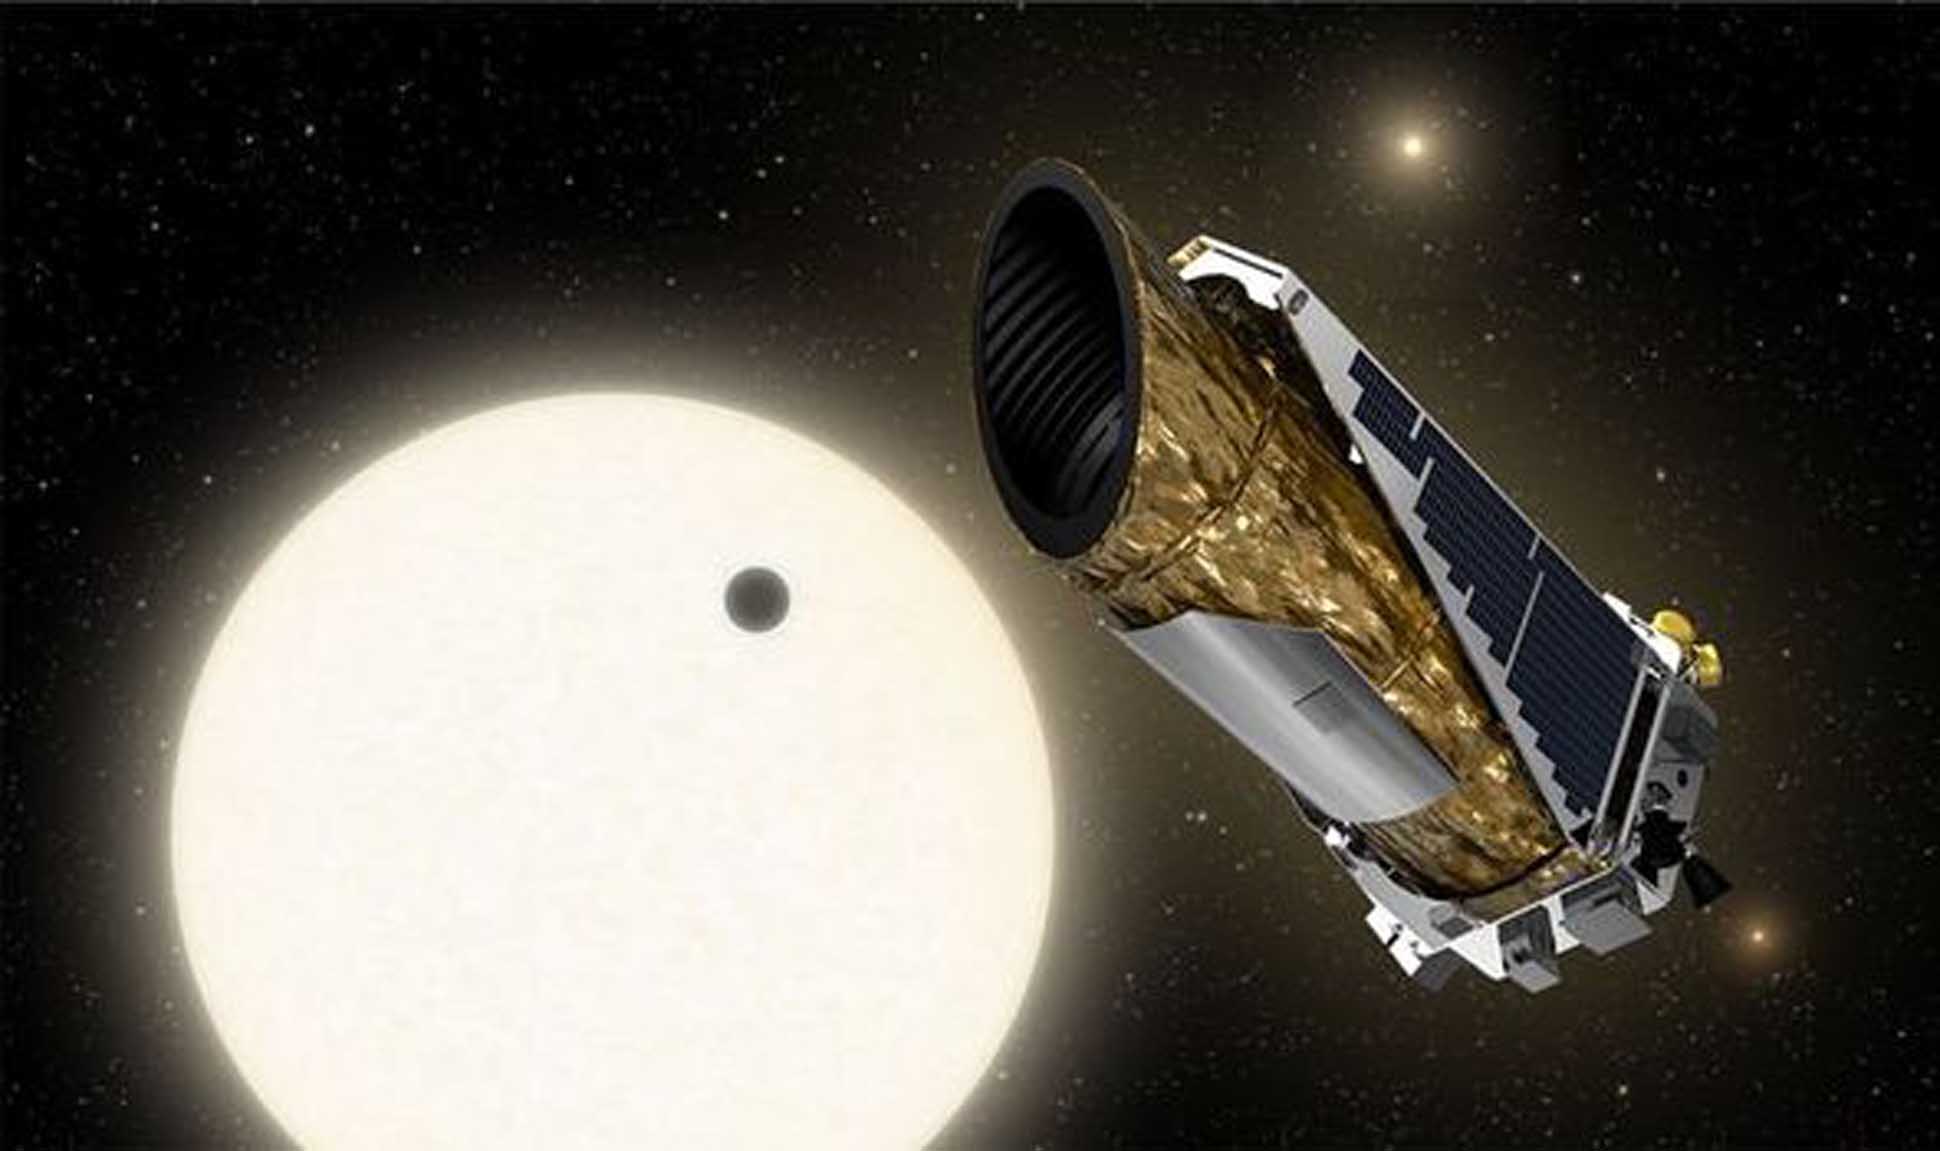  KOI-5Ab, un extraño planeta con tres estrellas